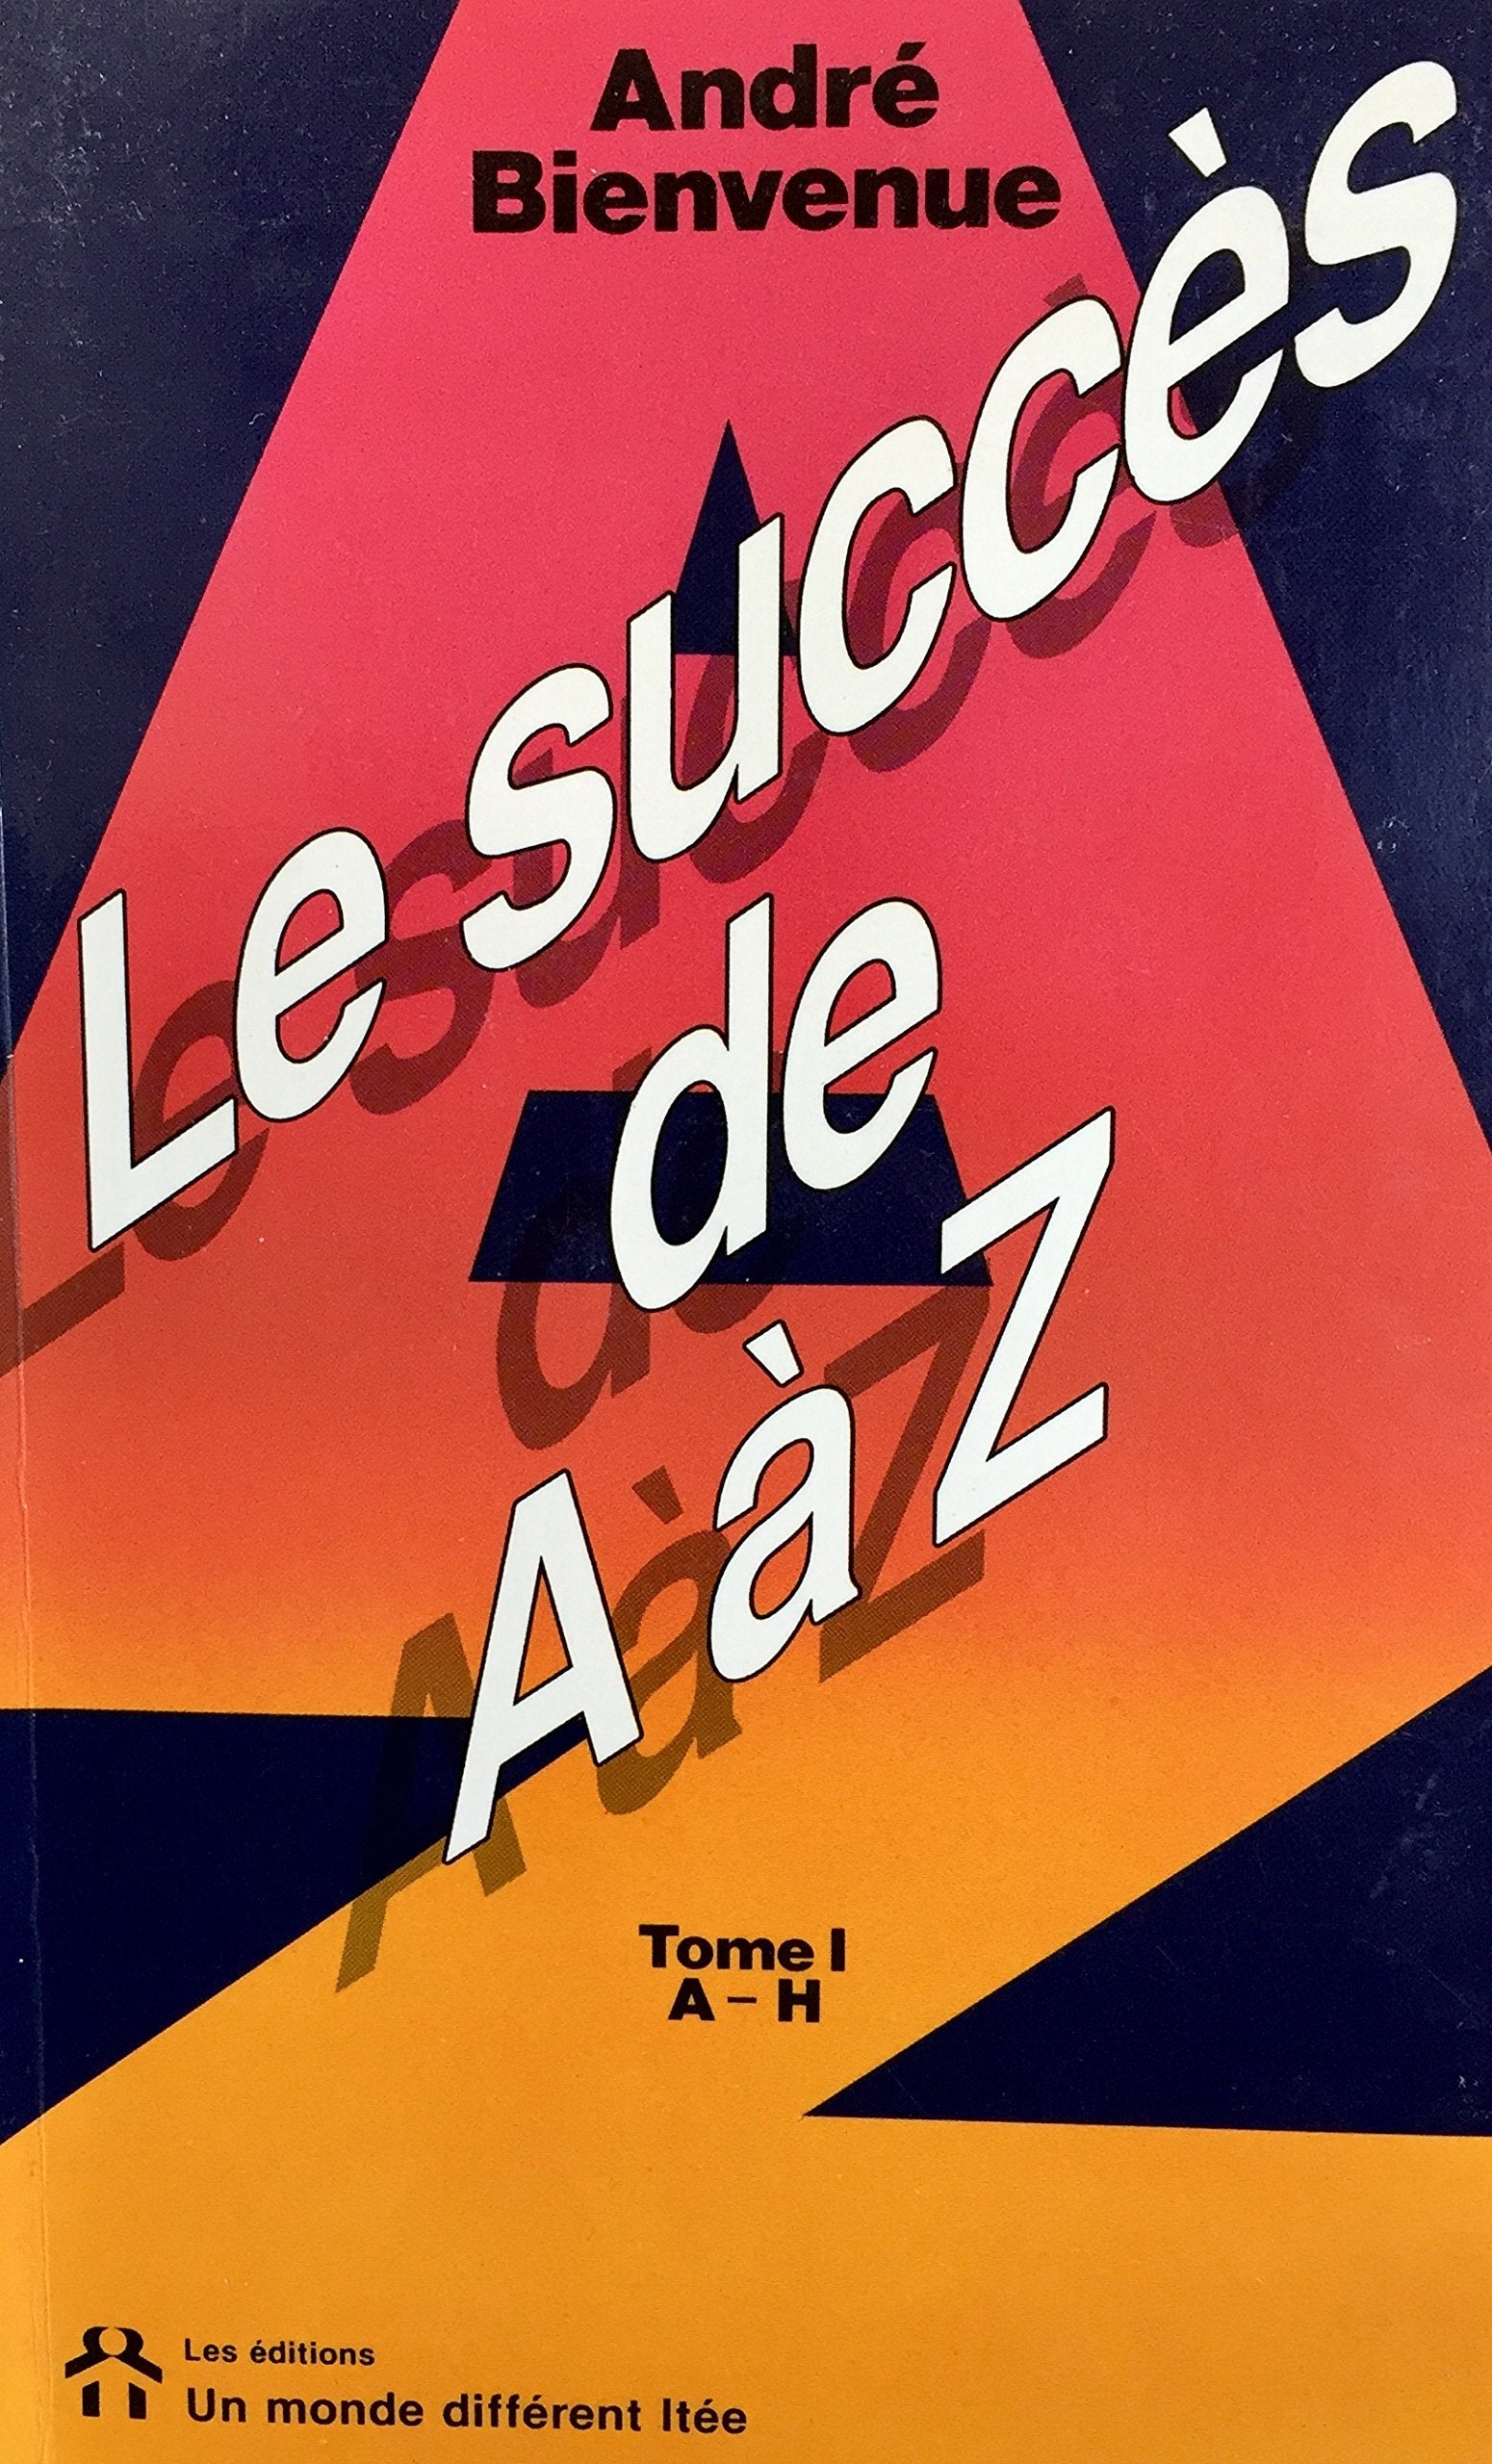 Livre ISBN 2892251230 Le succès de A à Z # 1 (André Bienvenue)